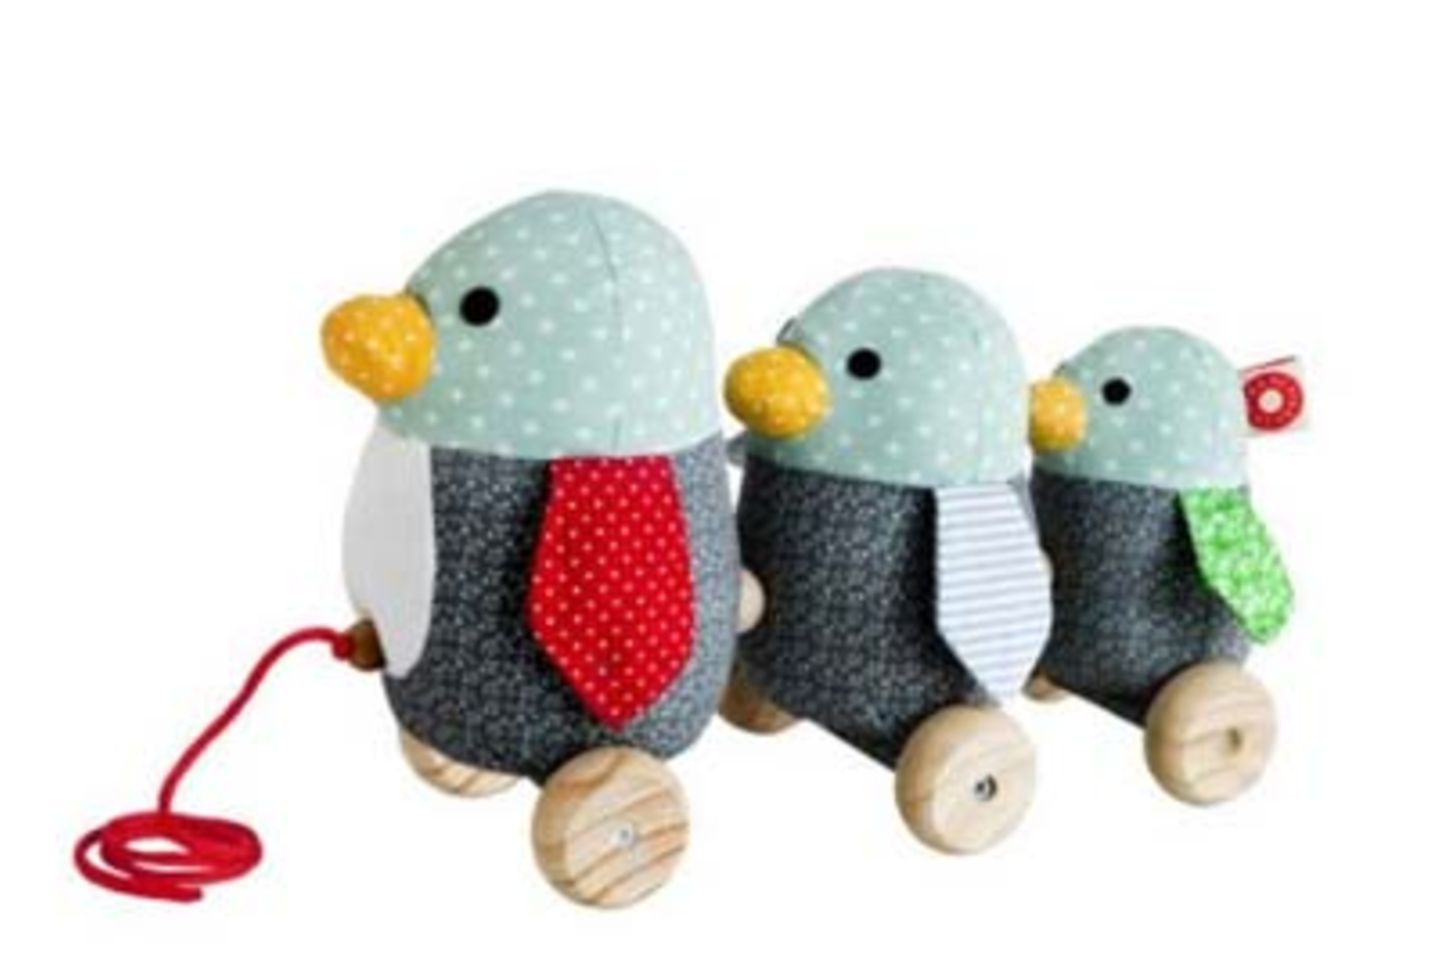 Nachzieh-Spielzeug: Pinguine von "Franck & Fischer" über Maedla.de